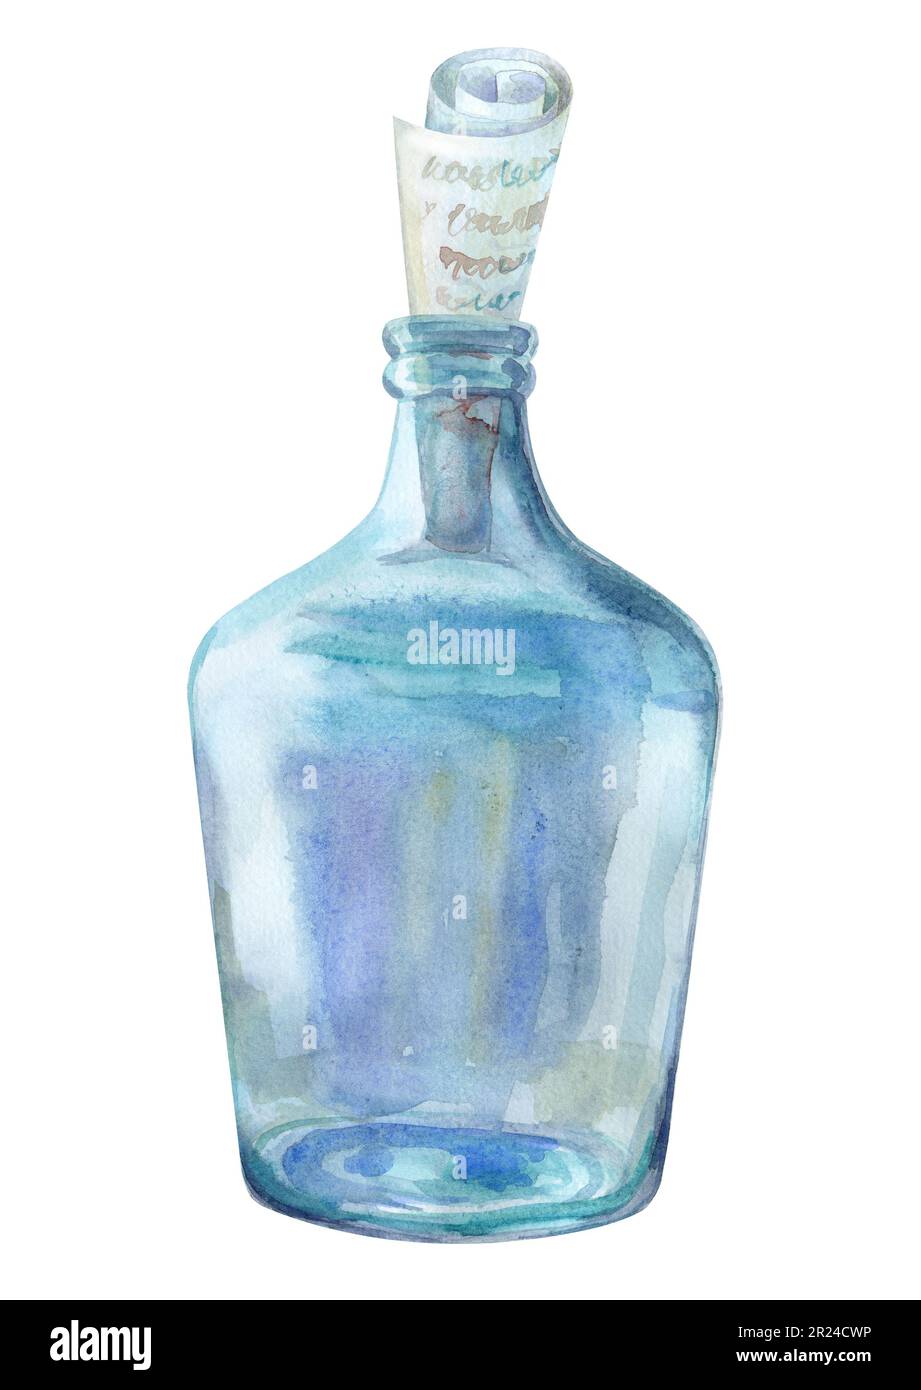 Eine Flasche blaues Glas mit Flieder- und azurblauen Farbtönen. In der Flasche befindet sich eine Schriftrolle mit einer Nachricht. Aquarell-Illustration, handgezeichnet. Stockfoto